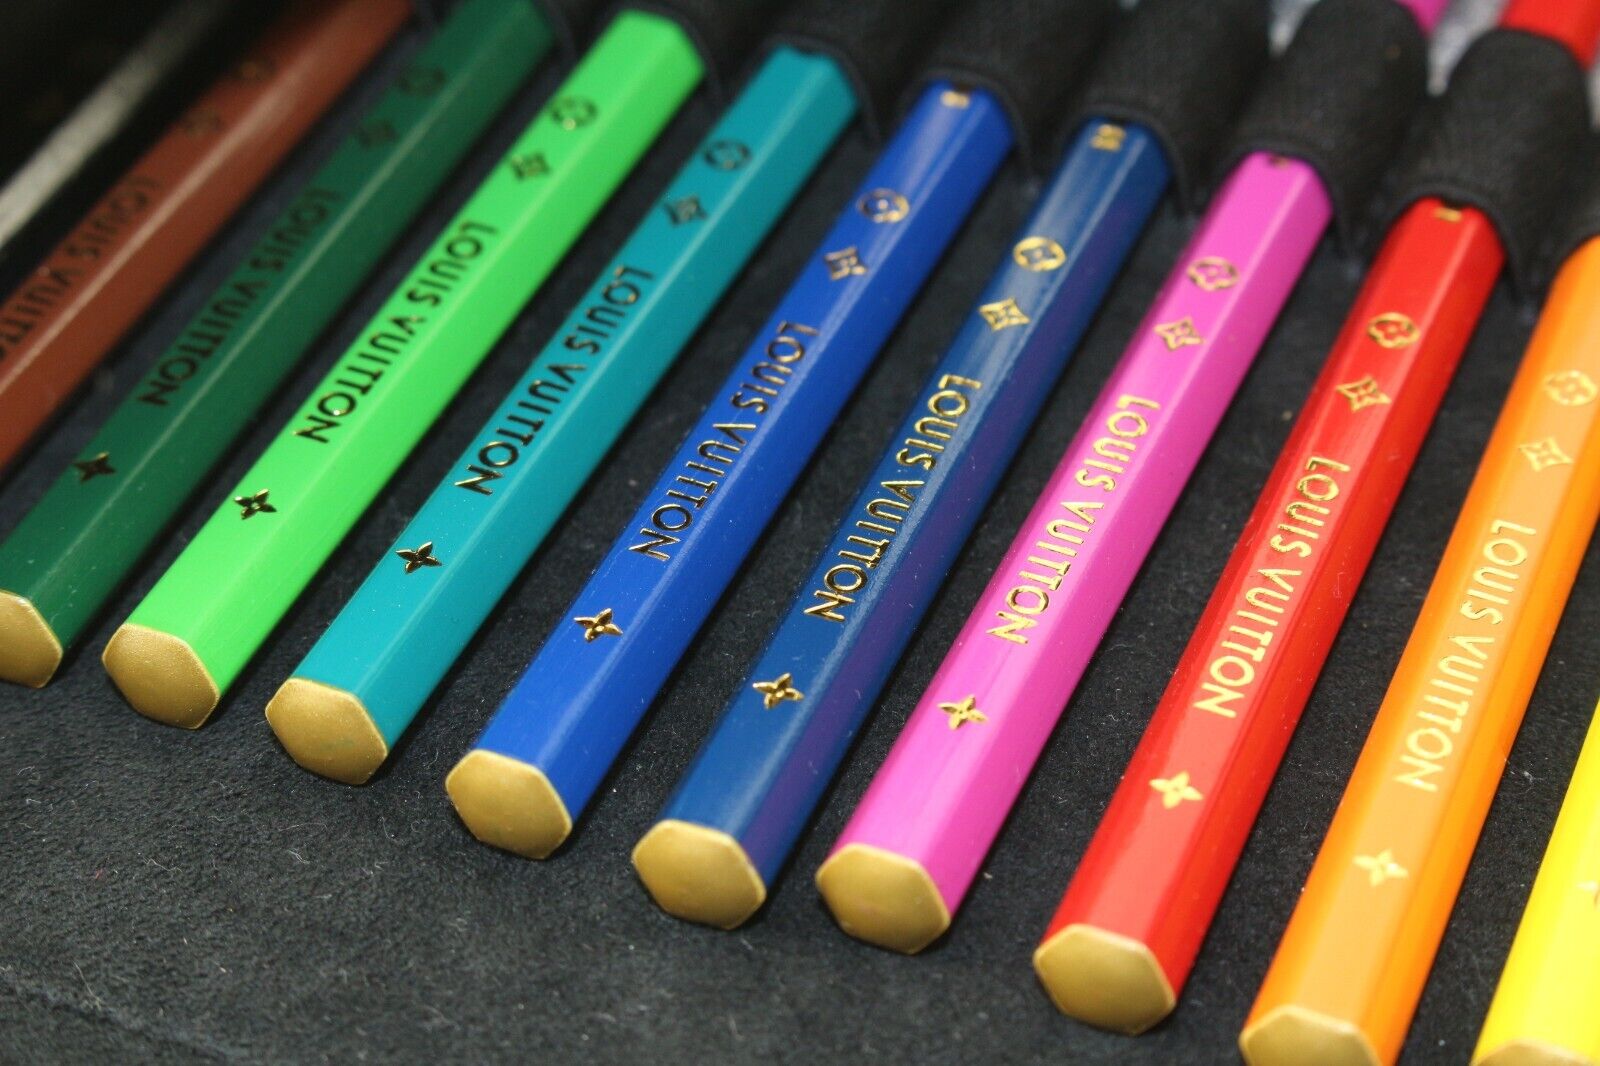 Louis Vuitton Colored Pencil Pouch